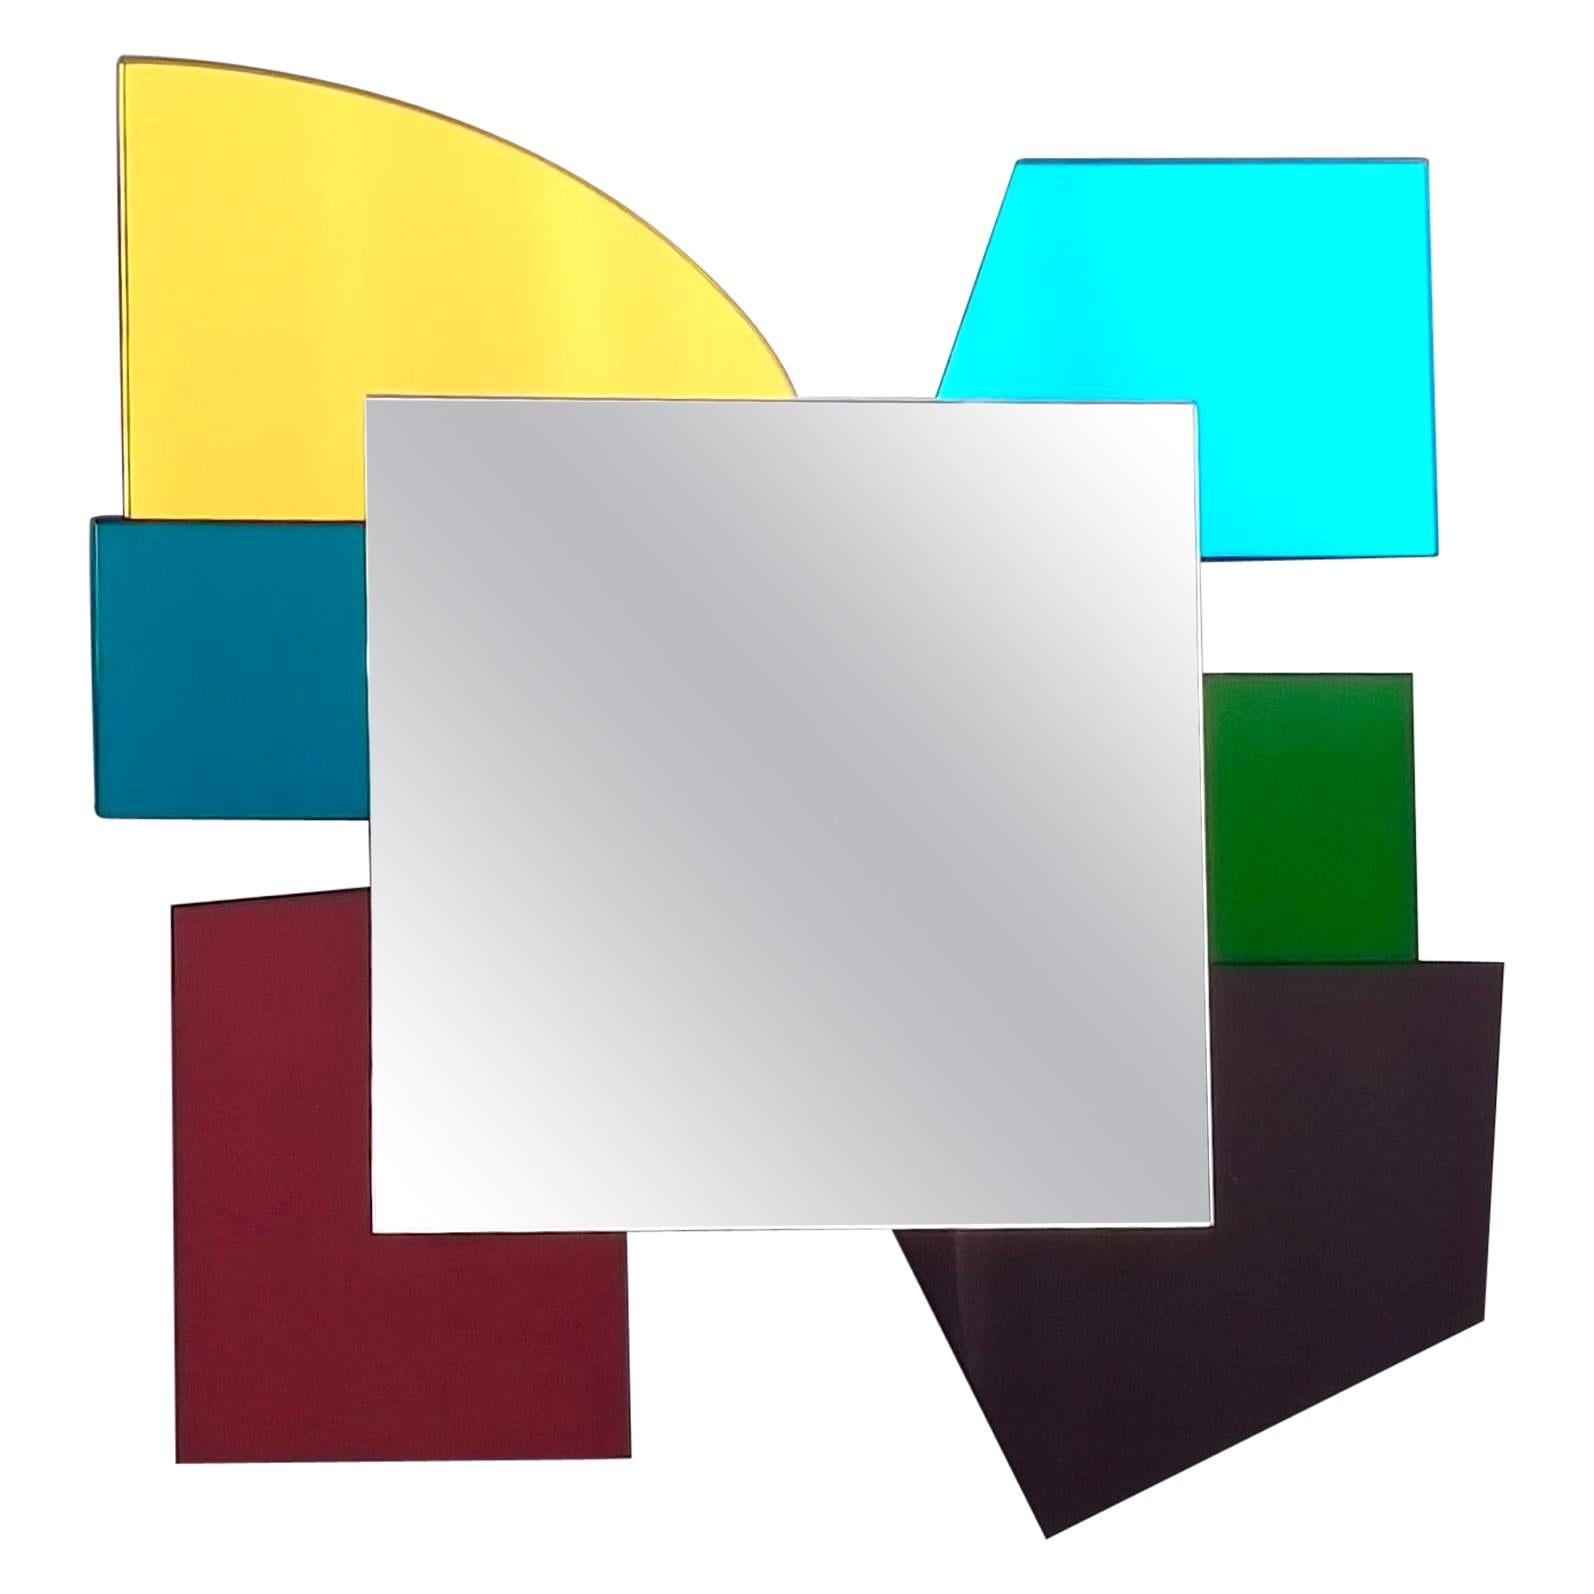 Miroir coloré de forme irrégulière dans le style d'Ettore Sottsass